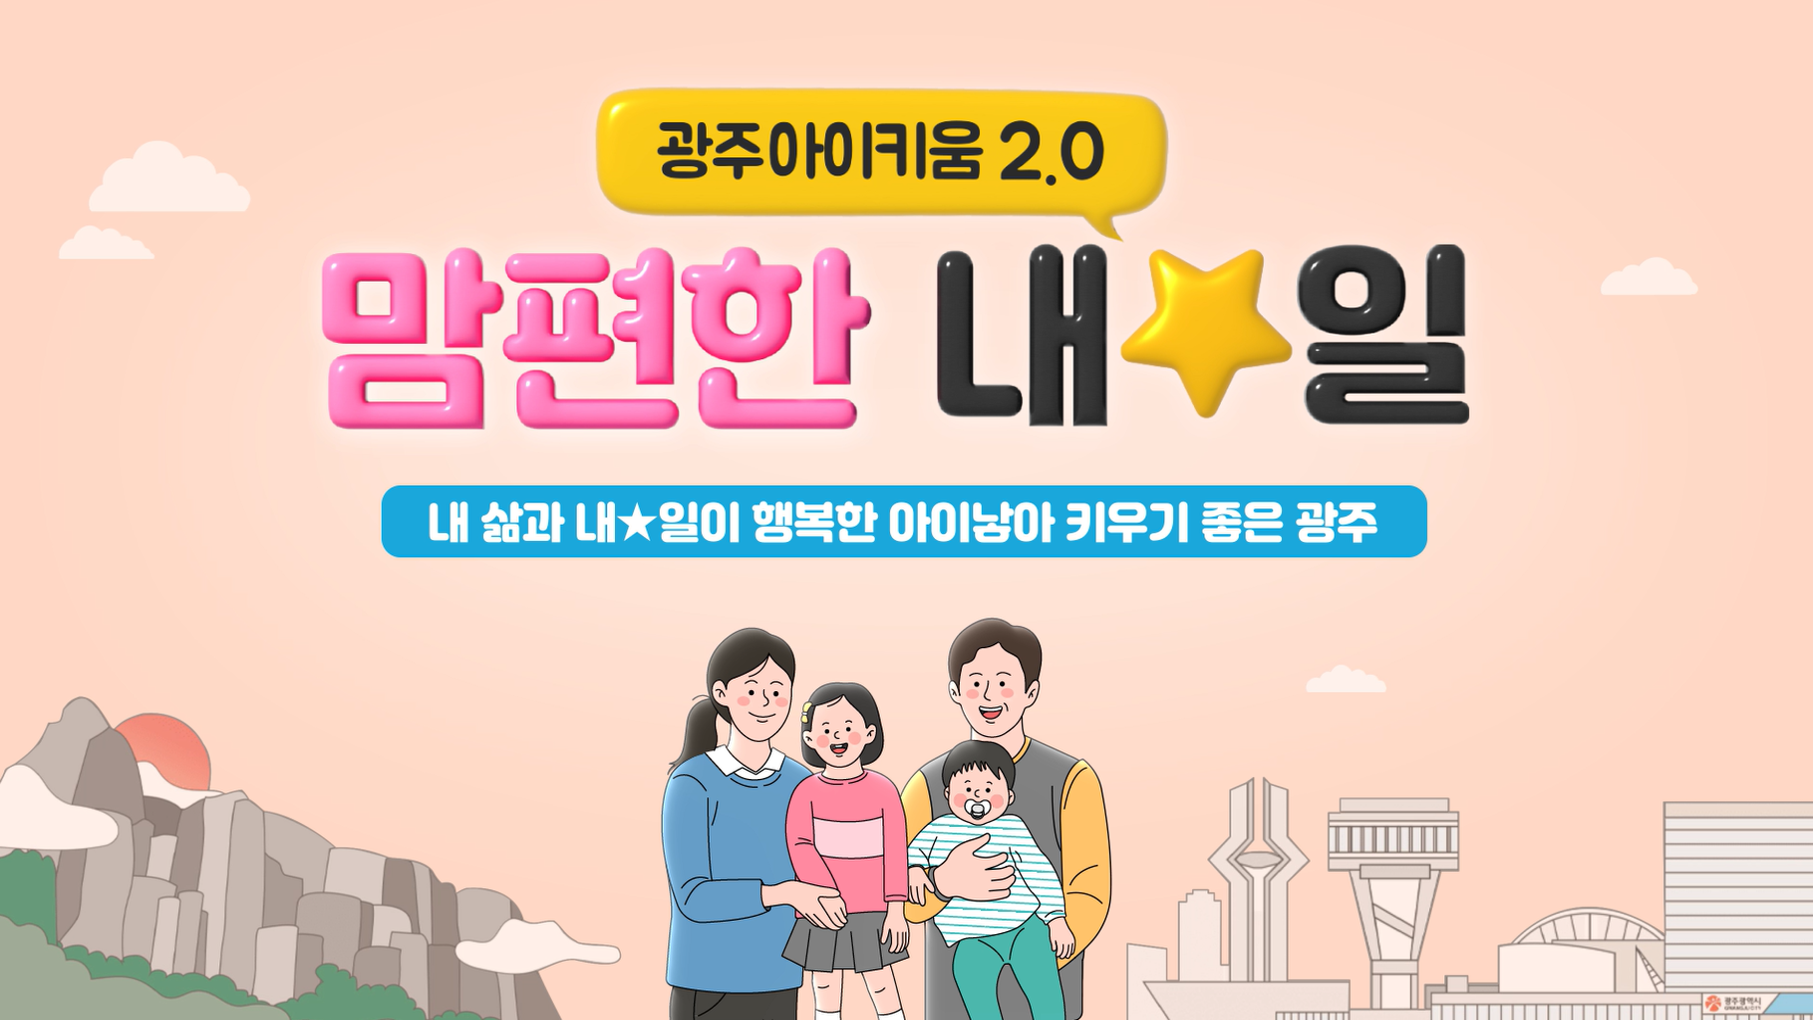 맘편한 내☆일, 광주아이키움2.0 홍보 영상